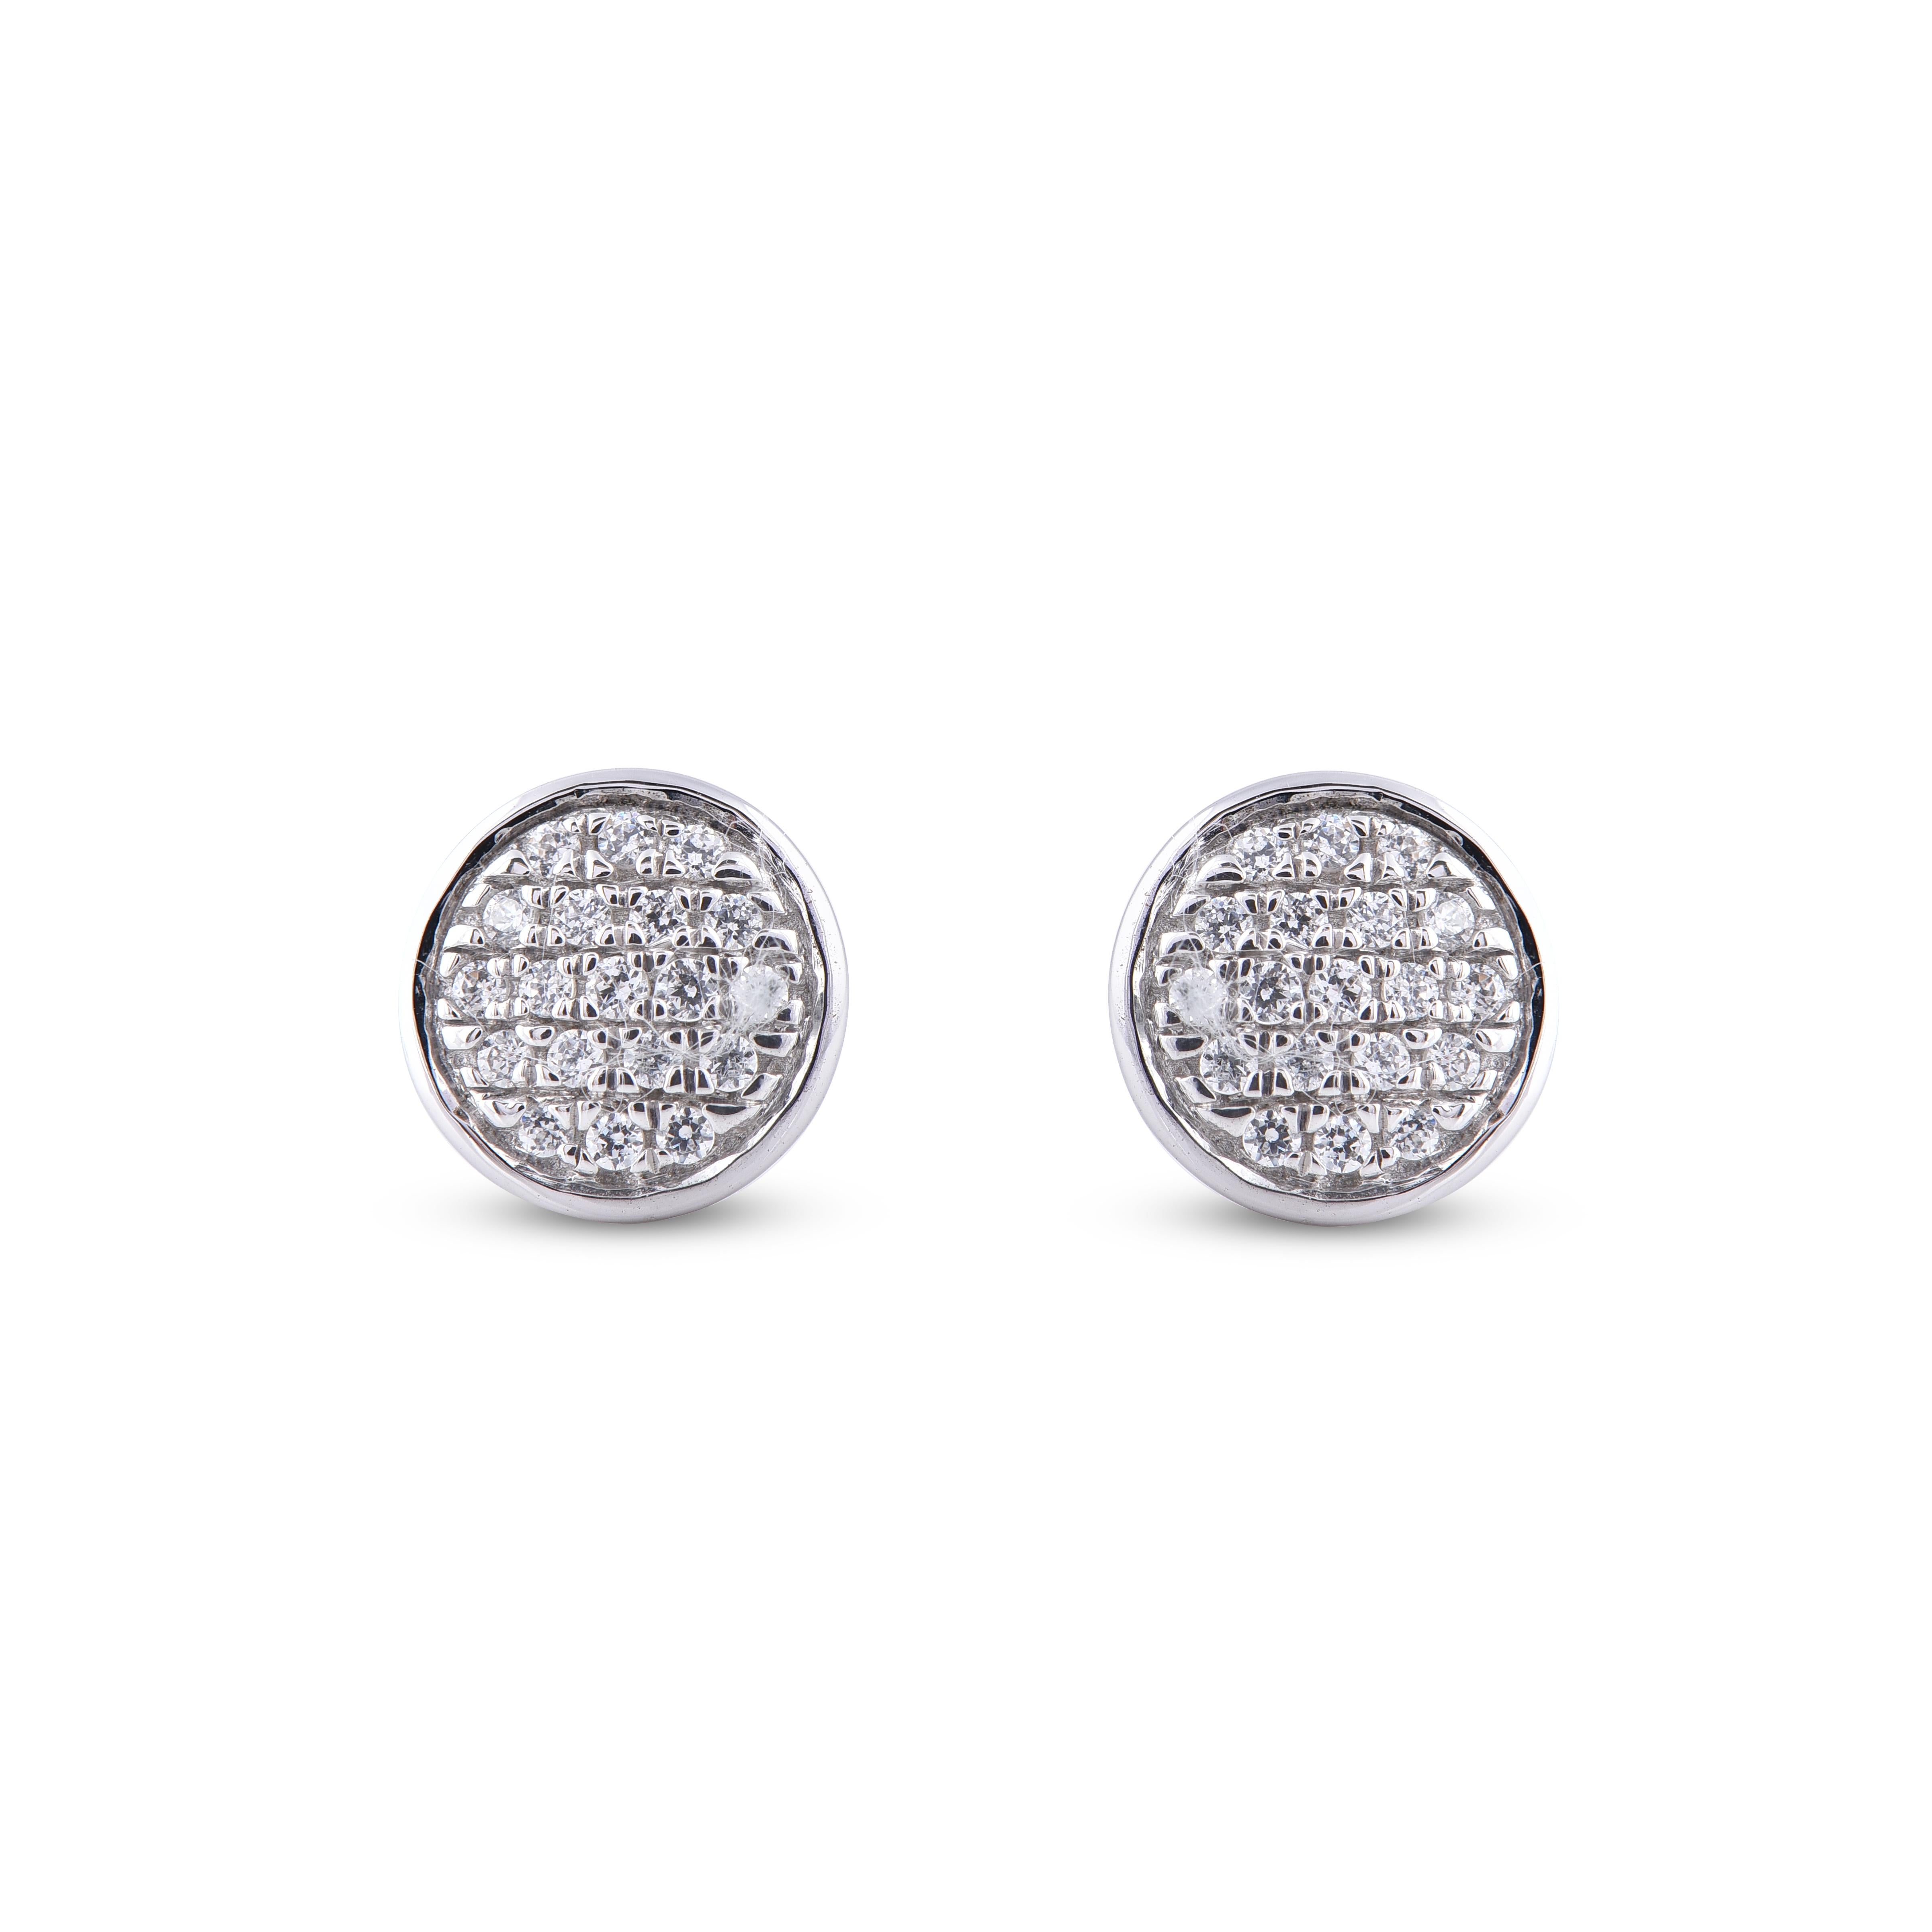 Ein klassischer Look, der zu jedem Outfit passt, diese  Design-Diamant-Ohrringe sind eine atemberaubende Ergänzung für Ihr Schmuckkästchen. Besetzt mit 38 runden Diamanten in Pave-Fassung, schimmert in der Farbe H-I, Reinheit I2 und ist aus 14 Karat